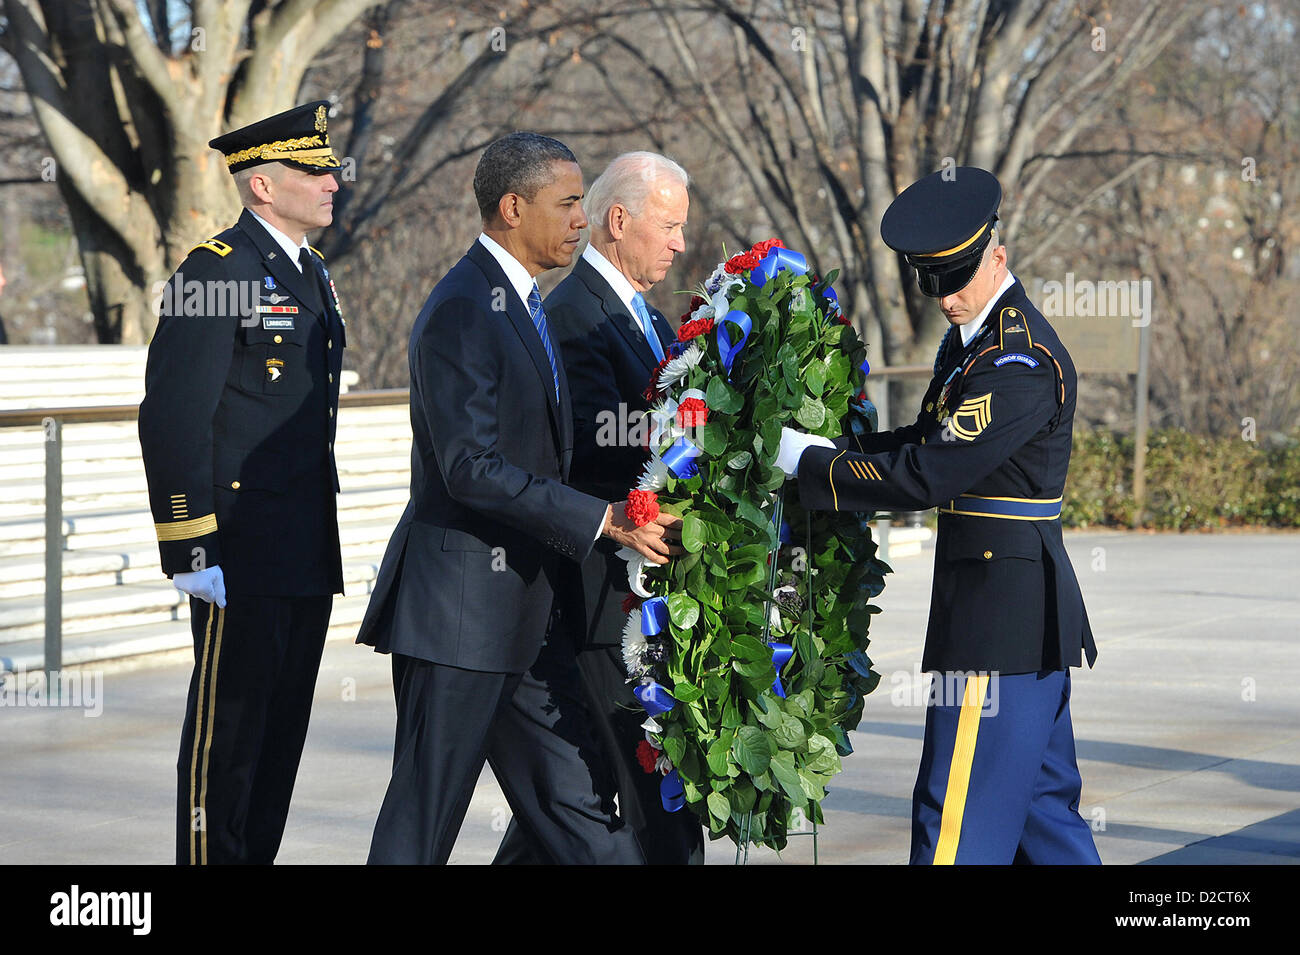 Le président américain Barack Obama et le Vice-président Joe Biden une gerbe sur la tombe de l'inconnu le 20 janvier 2013 au cimetière national d'Arlington, VA. C'est une tradition pour le président d'honorer les soldats inconnus le jour de l'investiture. Banque D'Images